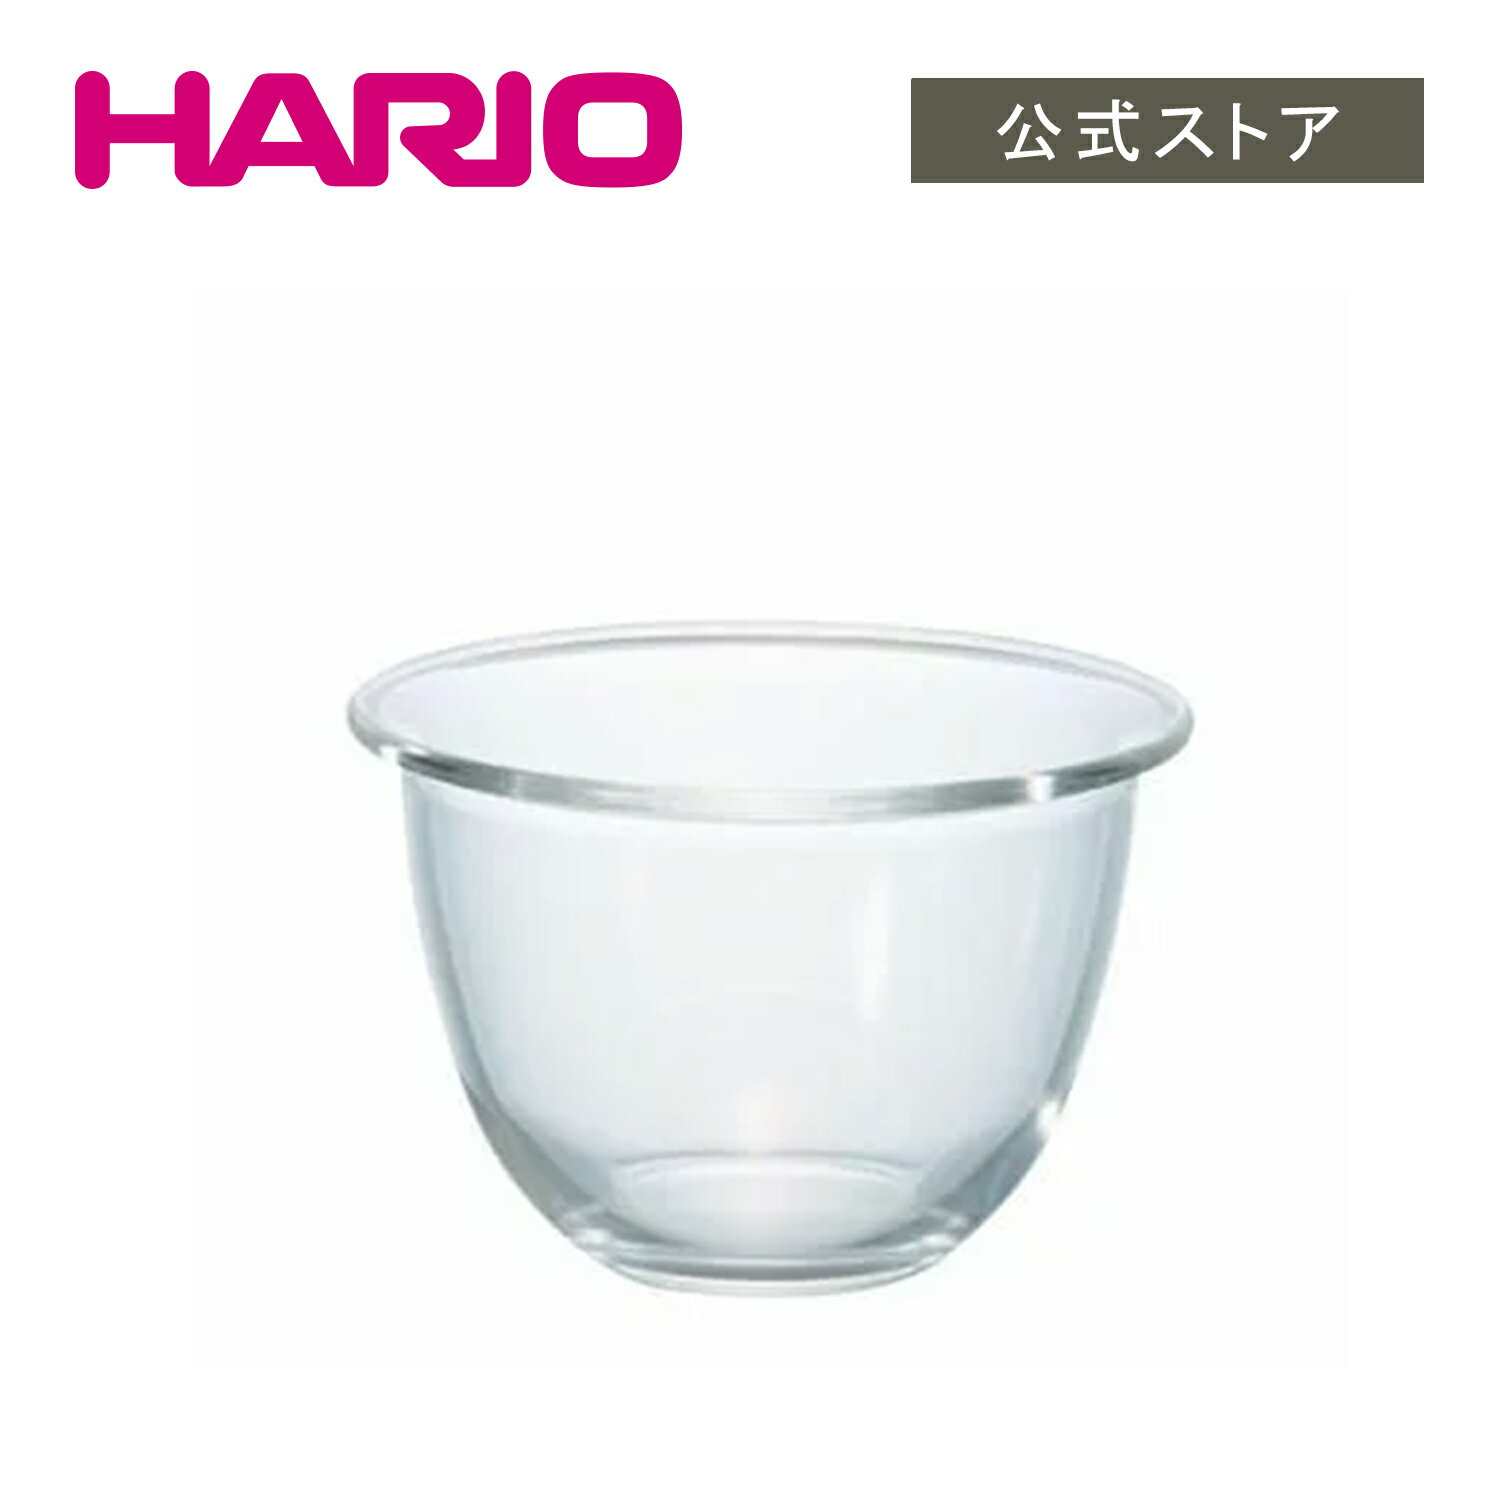 【公式ショップ】HARIO 耐熱ガラス製ボウル900